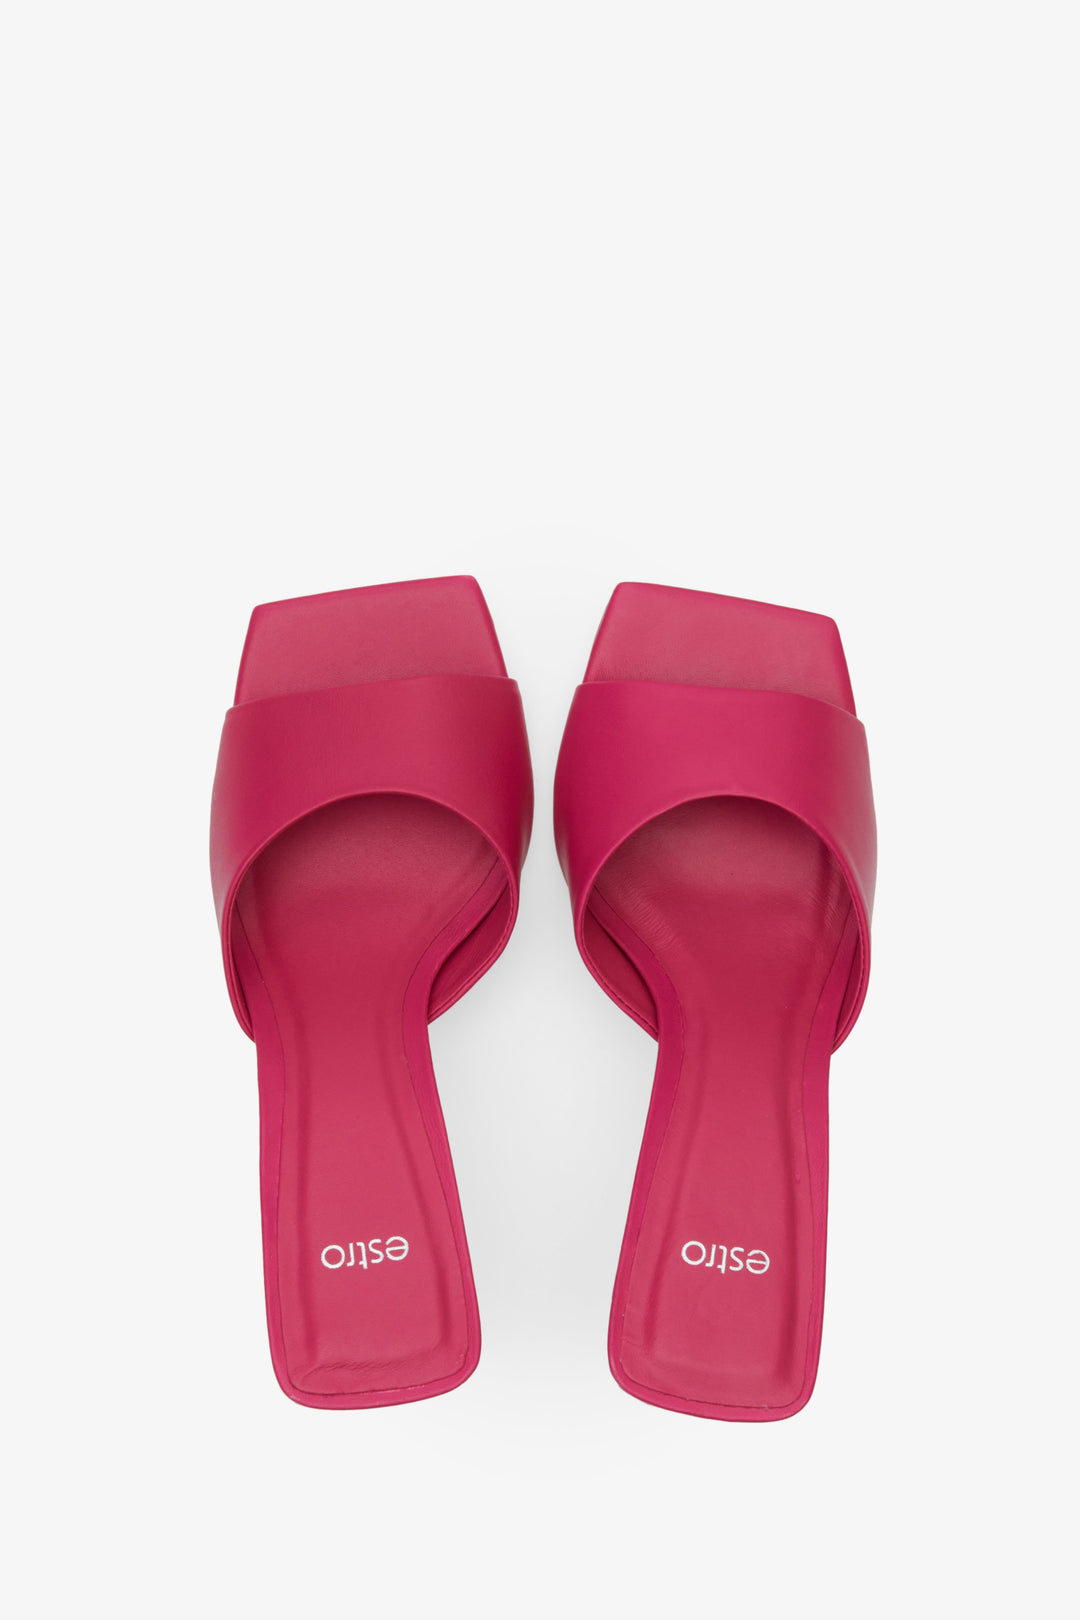 Damskie, skórzane klapki na słupku z kwadratowym czubkiem marki Estro - prezentacja modelu w kolorze różowym z góry.